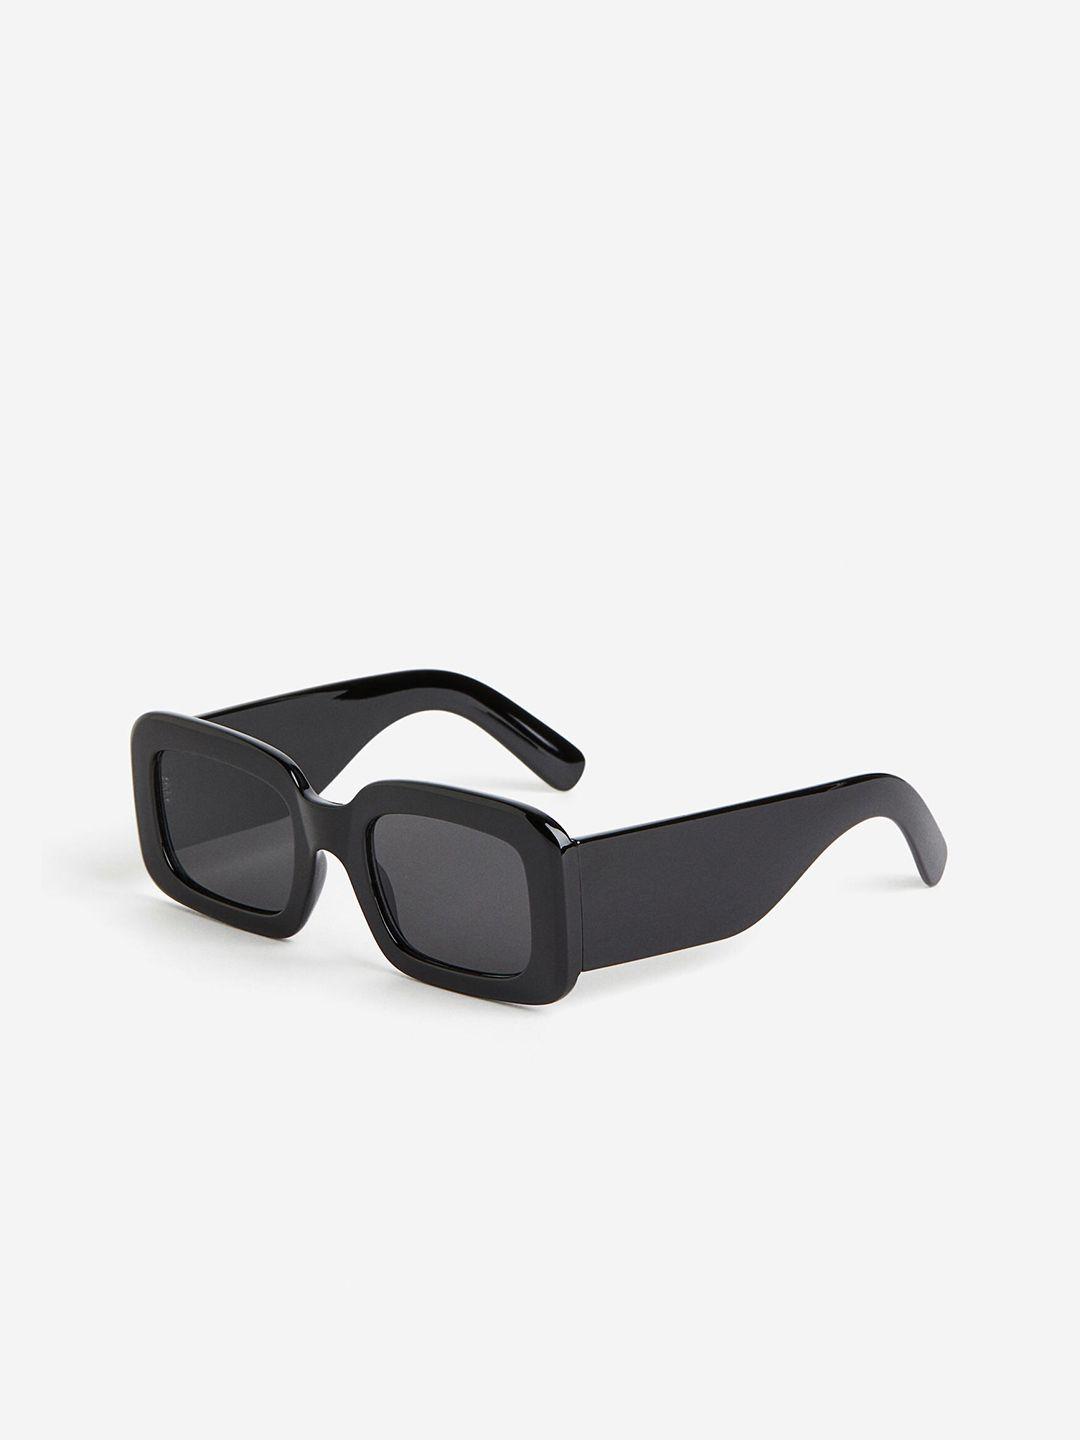 h&m women rectangular sunglasses